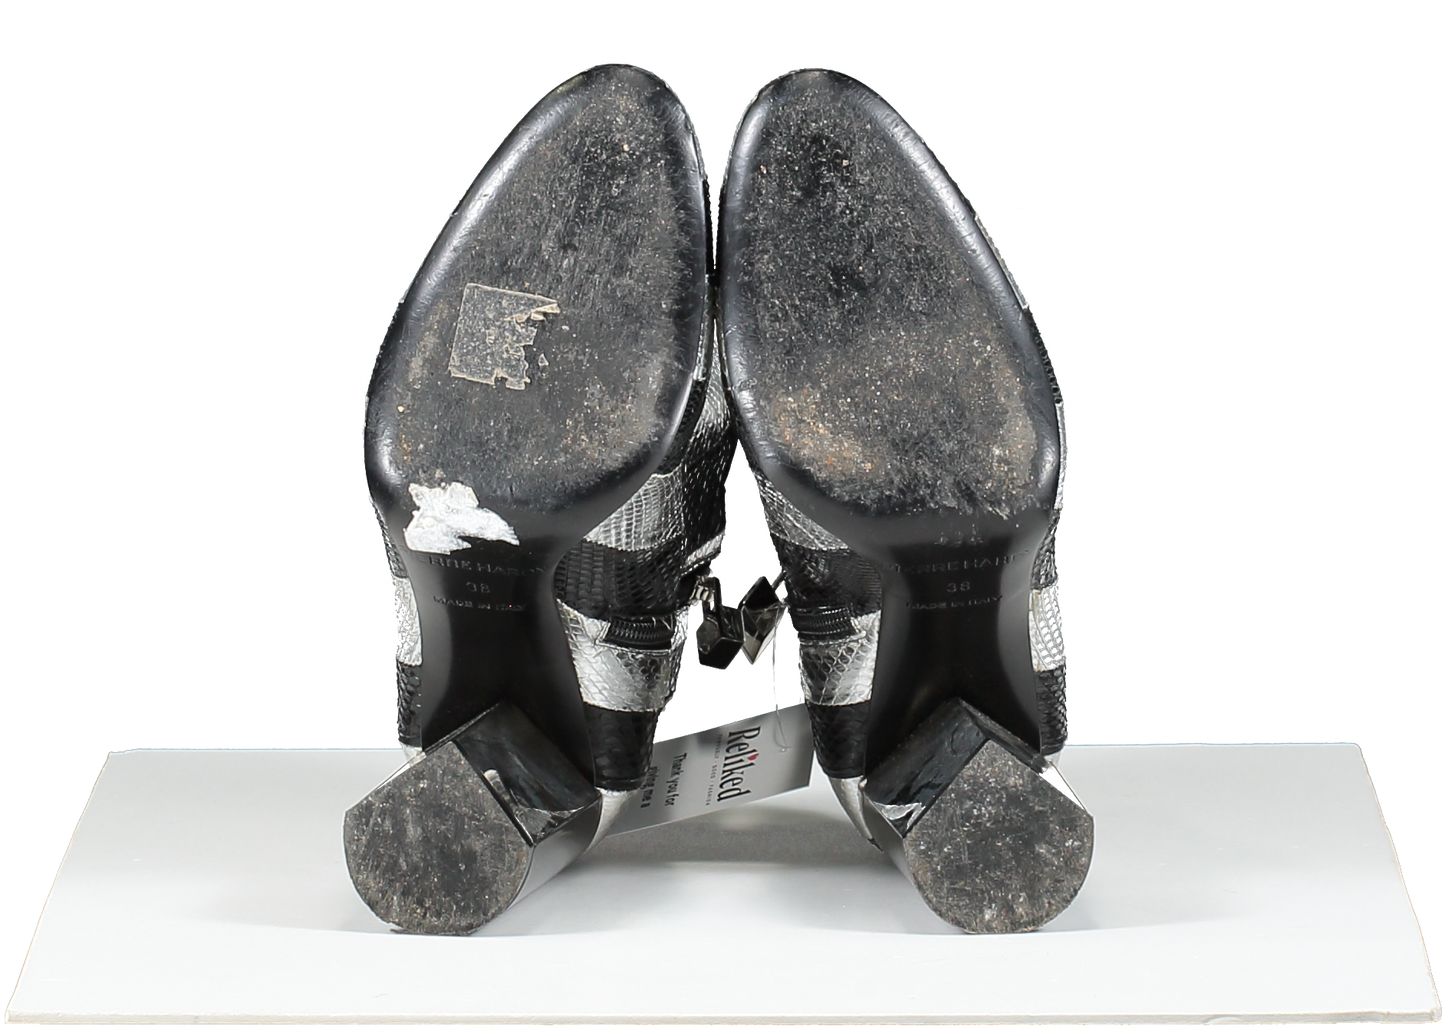 Pierre Hardy Metallic Belle Striped Snakeskin Ankle Boot, Black/silver UK 5 EU 38 👠